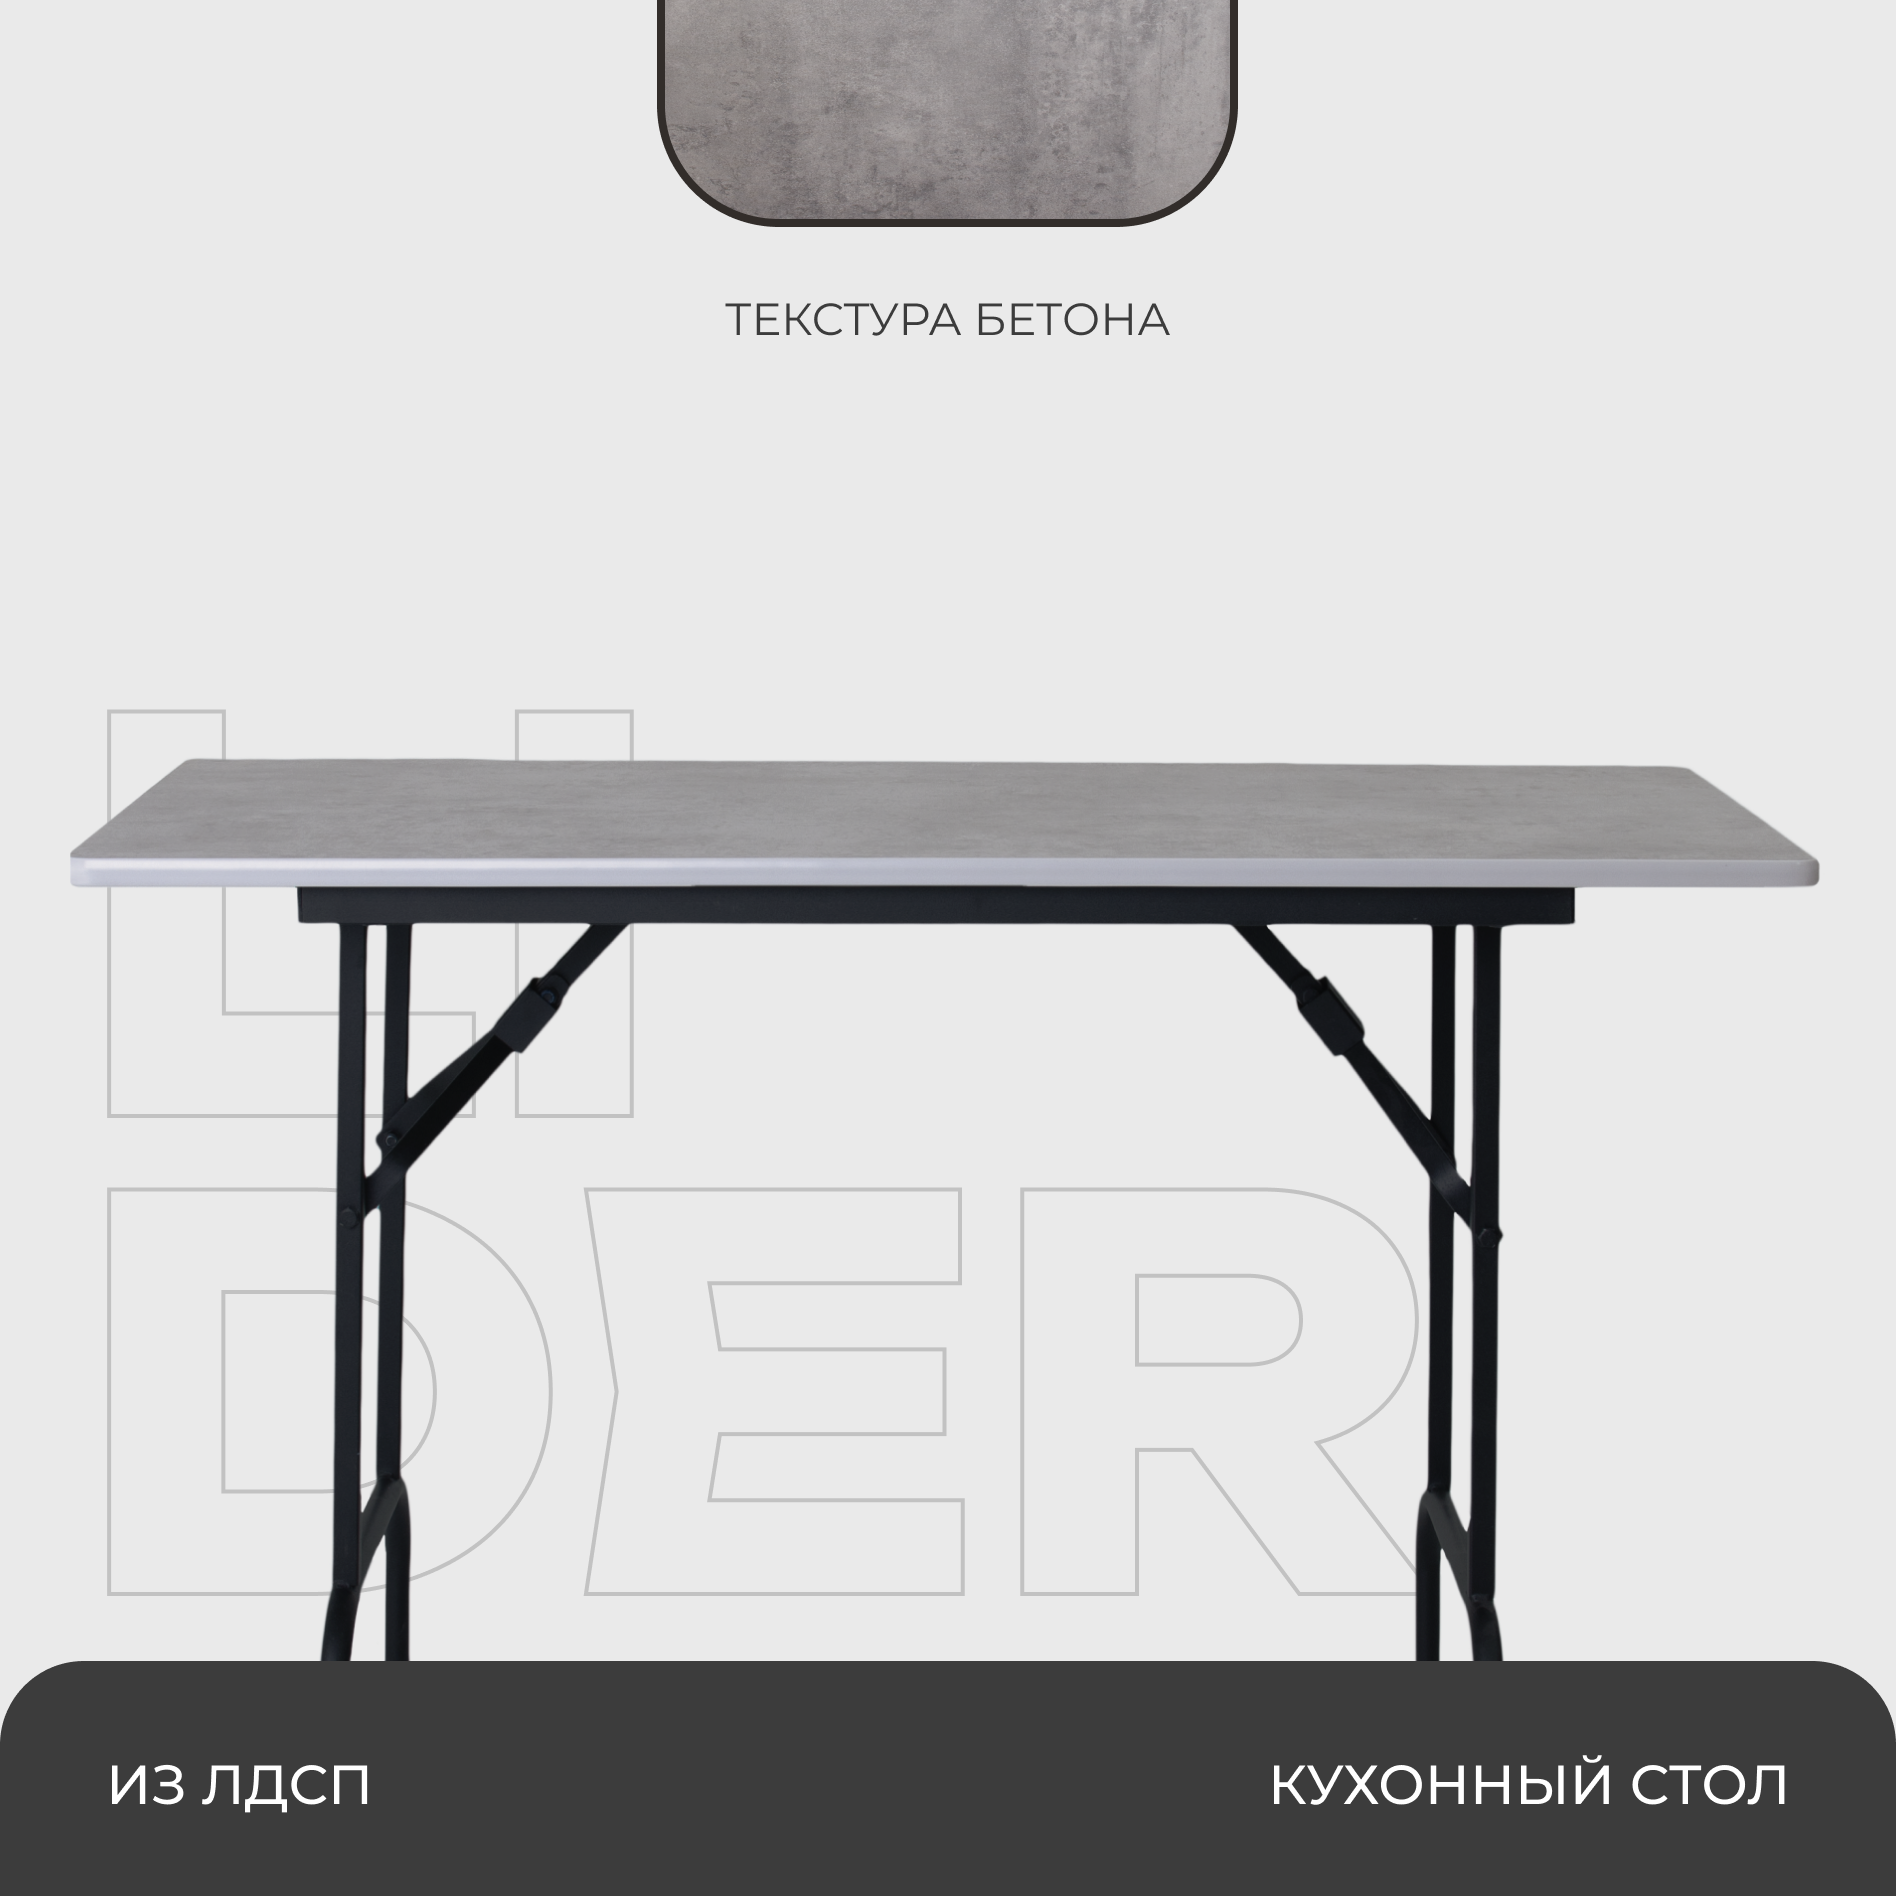 Стол складной раскладной прямоугольный кухонный, письменный, 60х120х75 см столешница - под бетон, каркас - черный